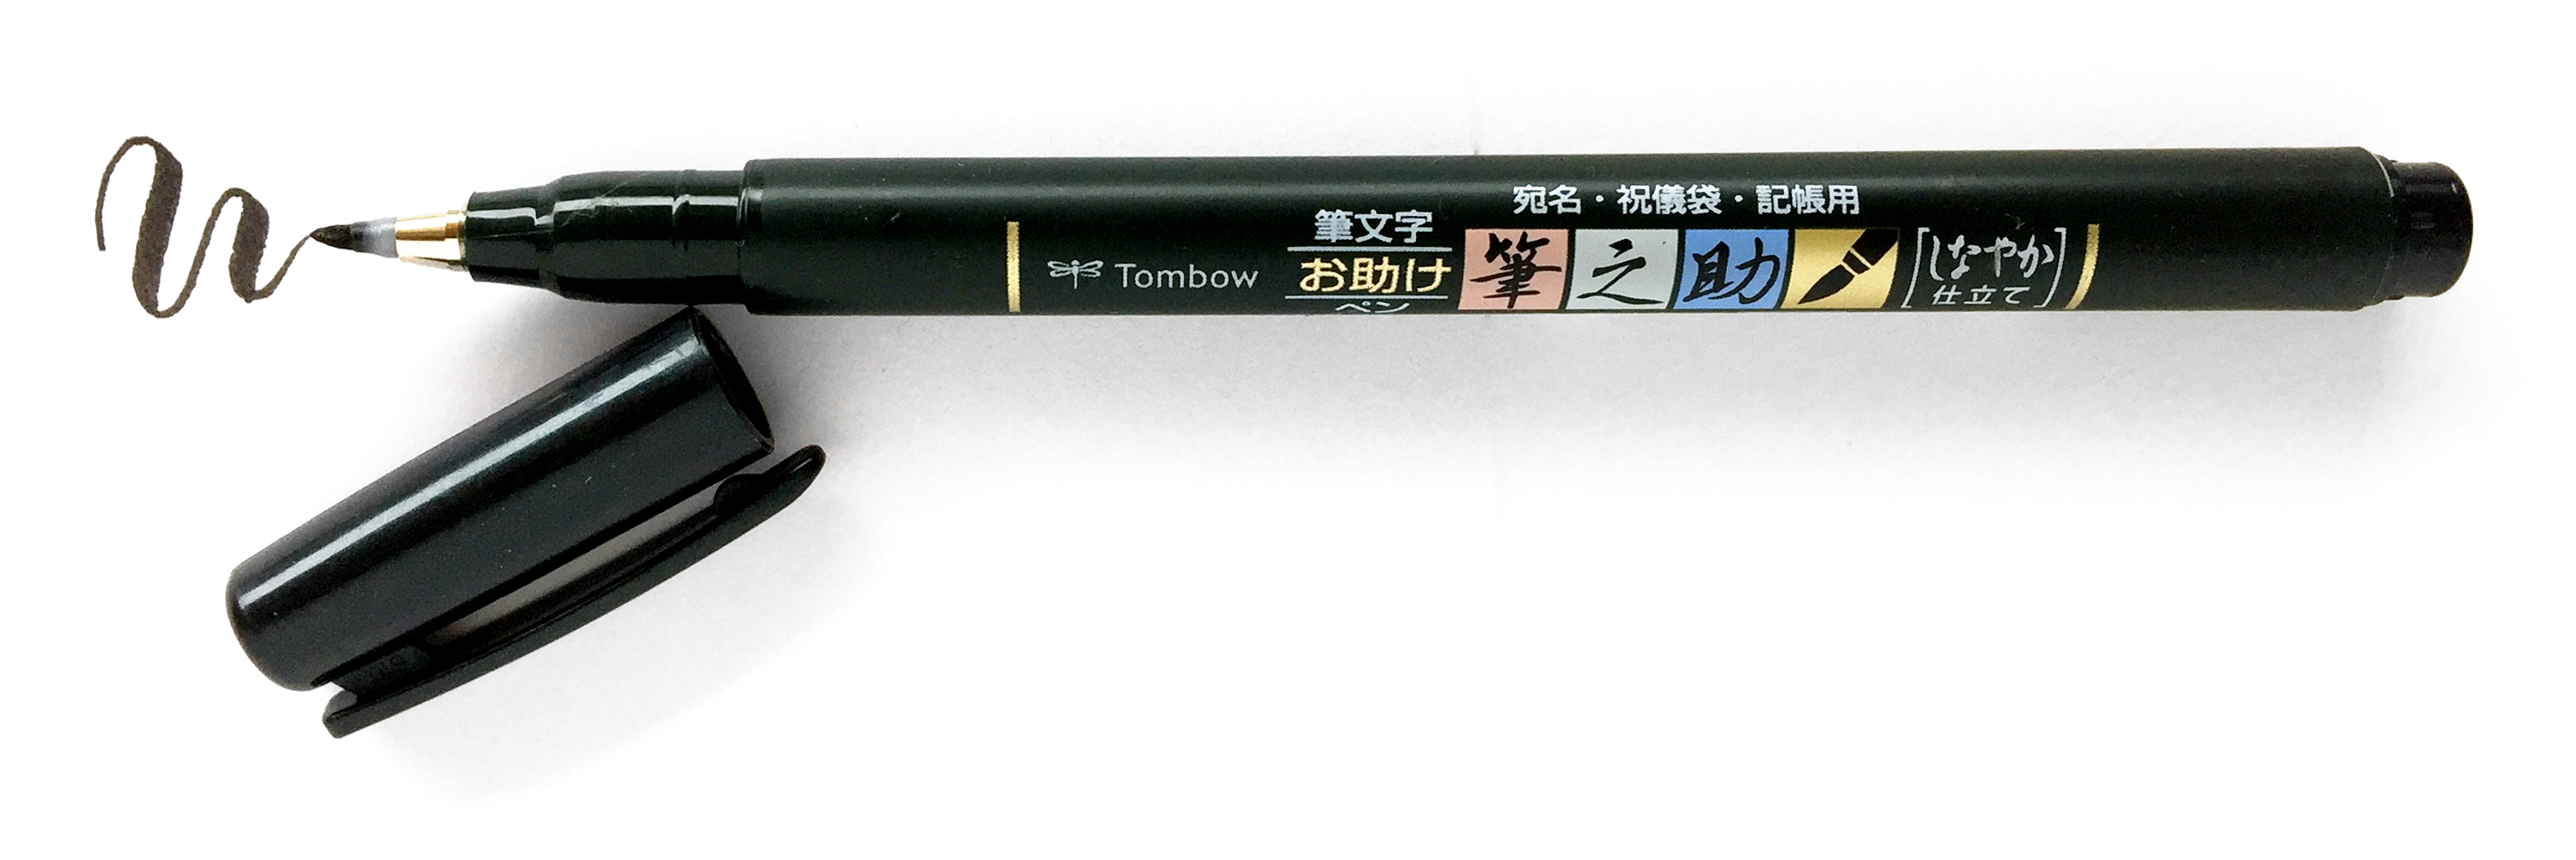 Tombow Fudenosuke